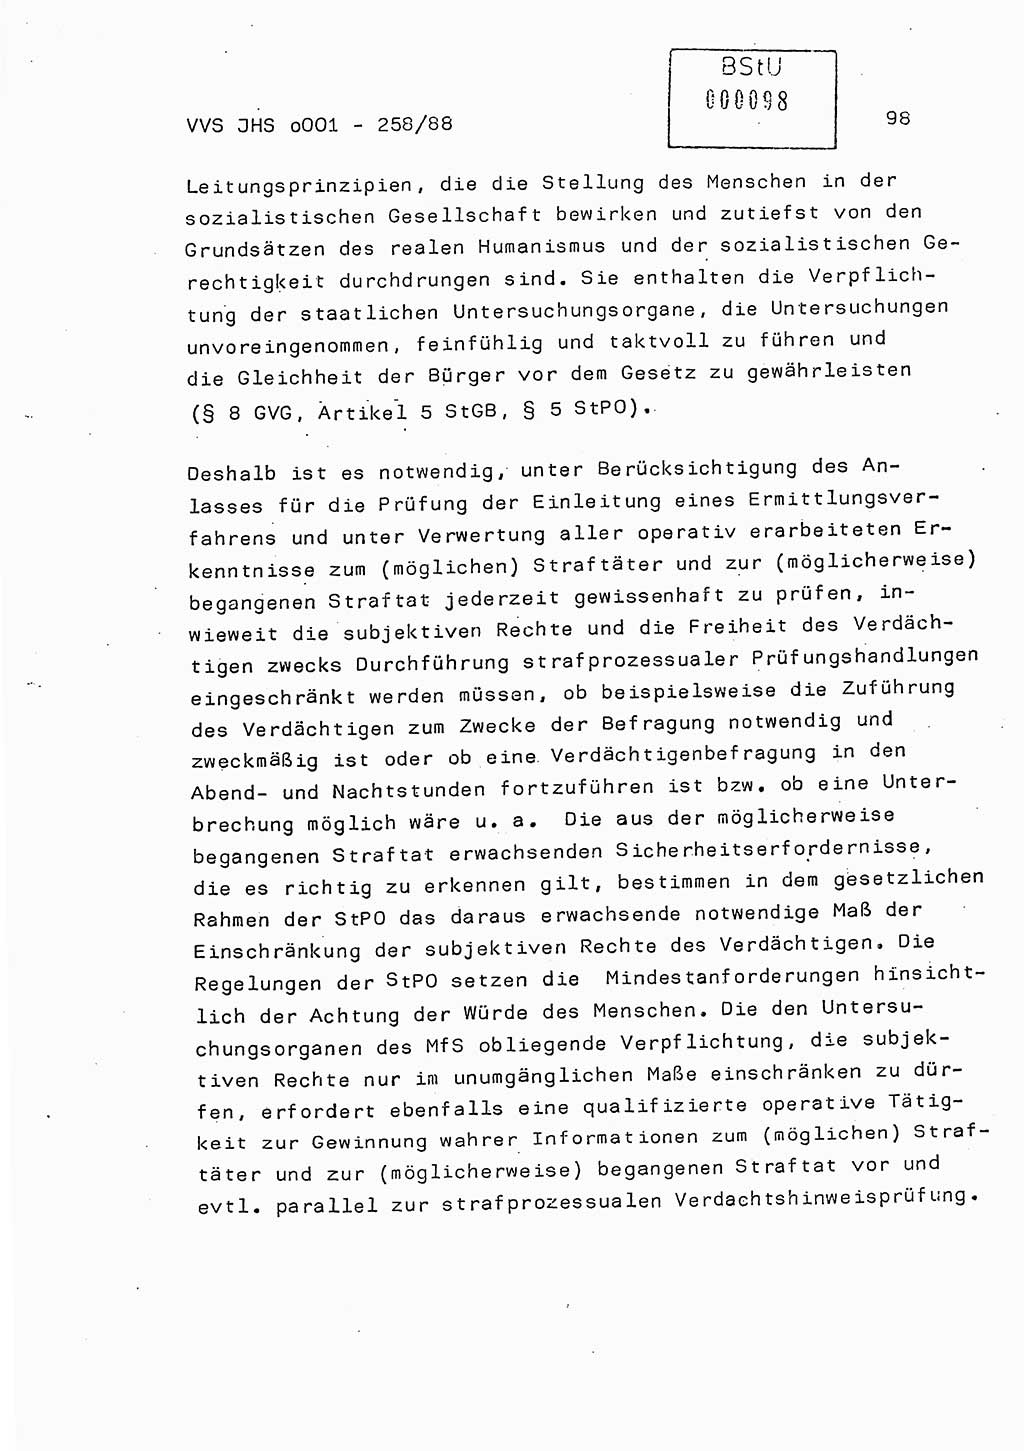 Dissertation, Oberleutnant Uwe Kärsten (JHS), Hauptmann Dr. Joachim Henkel (JHS), Oberstleutnant Werner Mählitz (Leiter der Abt. Ⅸ BV Rostock), Oberstleutnant Jürgen Tröge (HA Ⅸ/AKG), Oberstleutnant Winfried Ziegler (HA Ⅸ/9), Major Wolf-Rüdiger Wurzler (JHS), Ministerium für Staatssicherheit (MfS) [Deutsche Demokratische Republik (DDR)], Juristische Hochschule (JHS), Vertrauliche Verschlußsache (VVS) o001-258/88, Potsdam 1988, Seite 98 (Diss. MfS DDR JHS VVS o001-258/88 1988, S. 98)